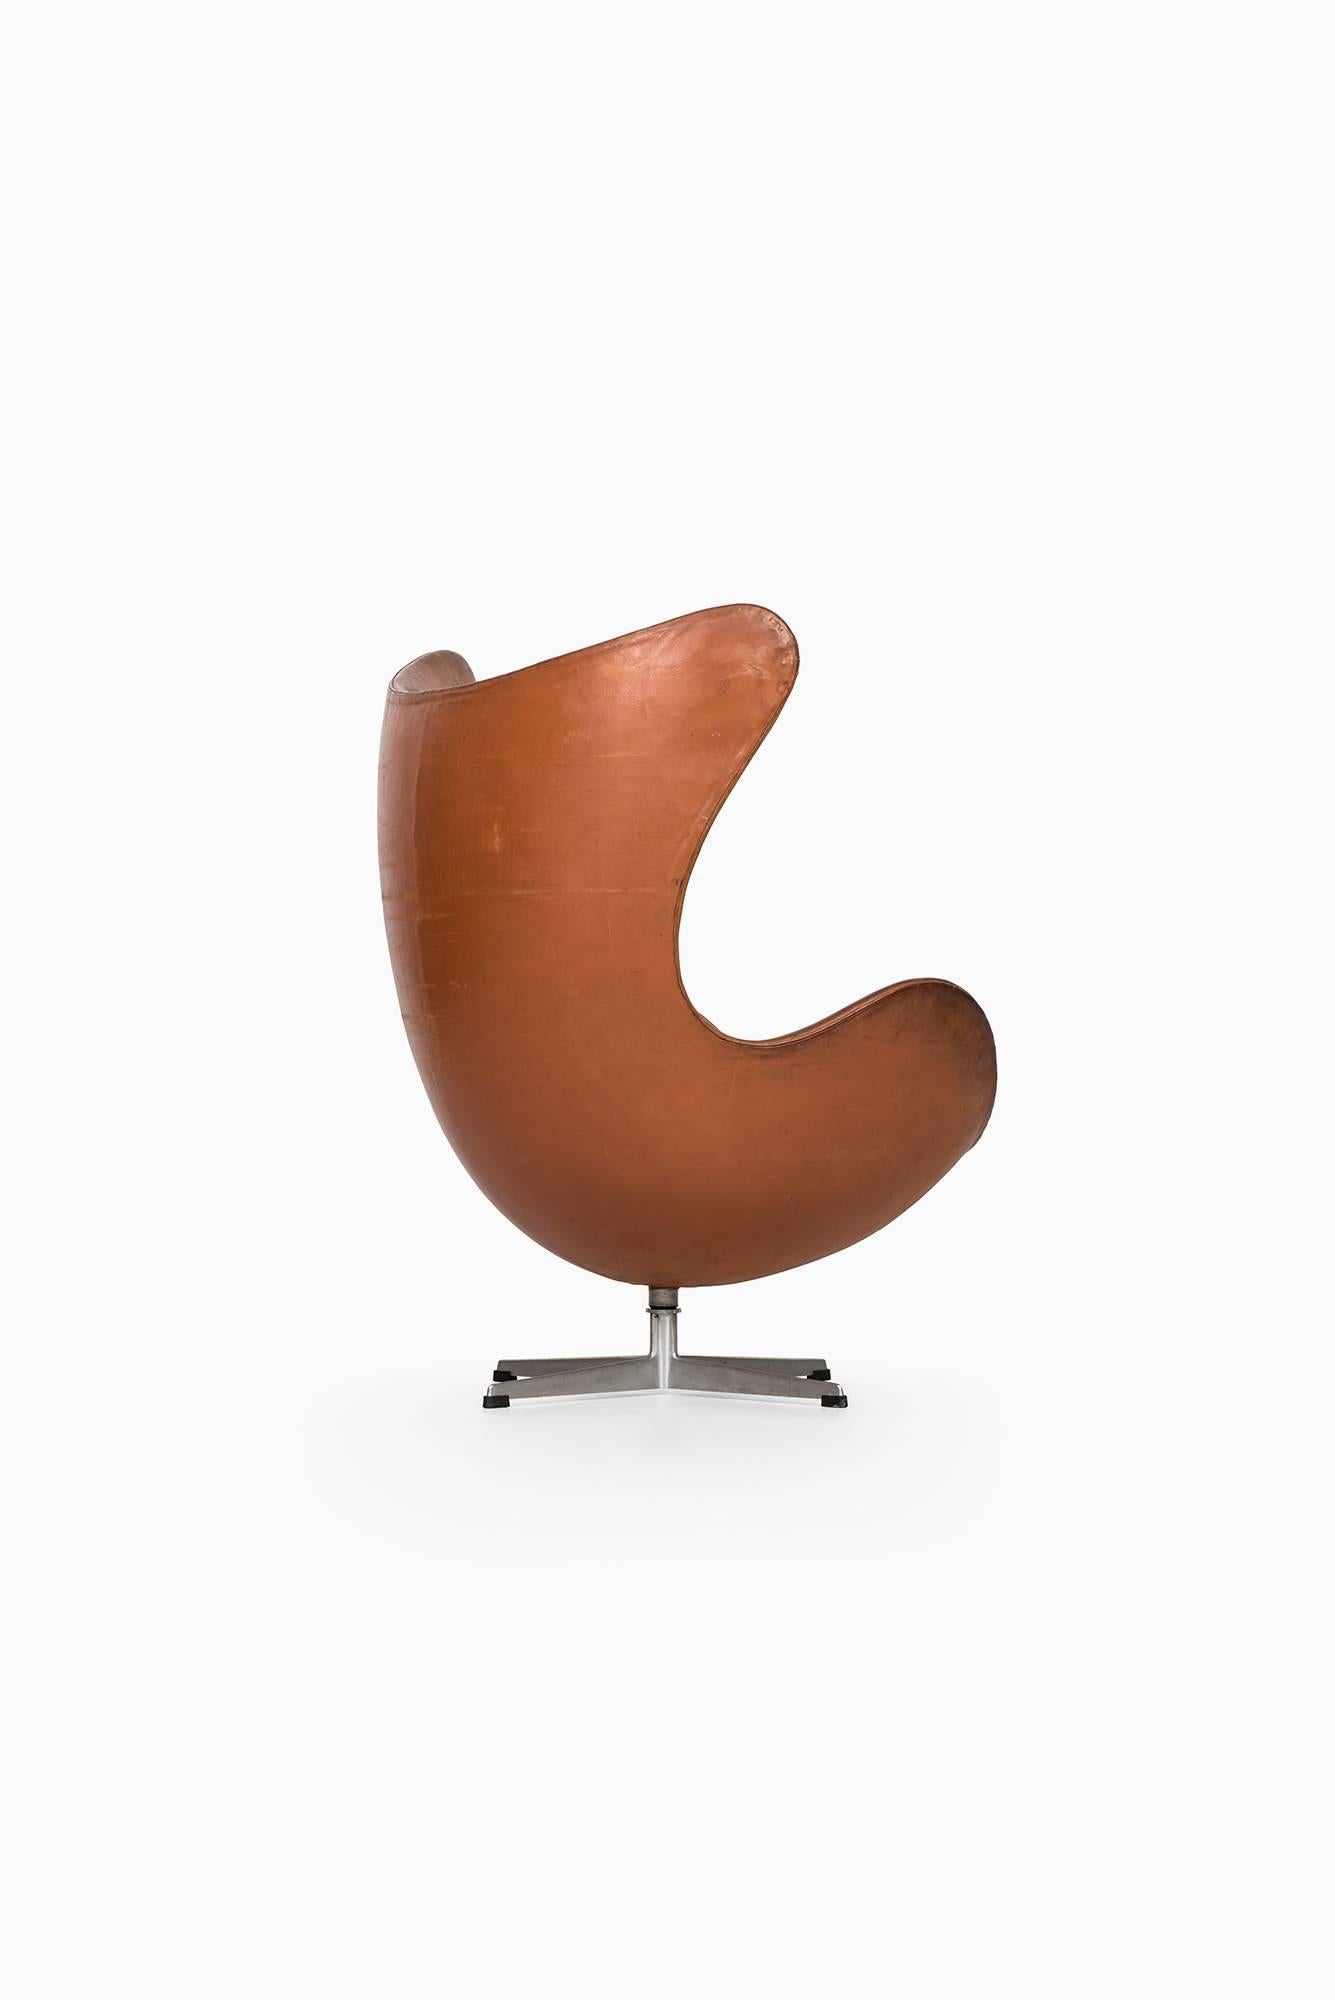 Danish Arne Jacobsen Early Egg Chair by Fritz Hansen in Denmark